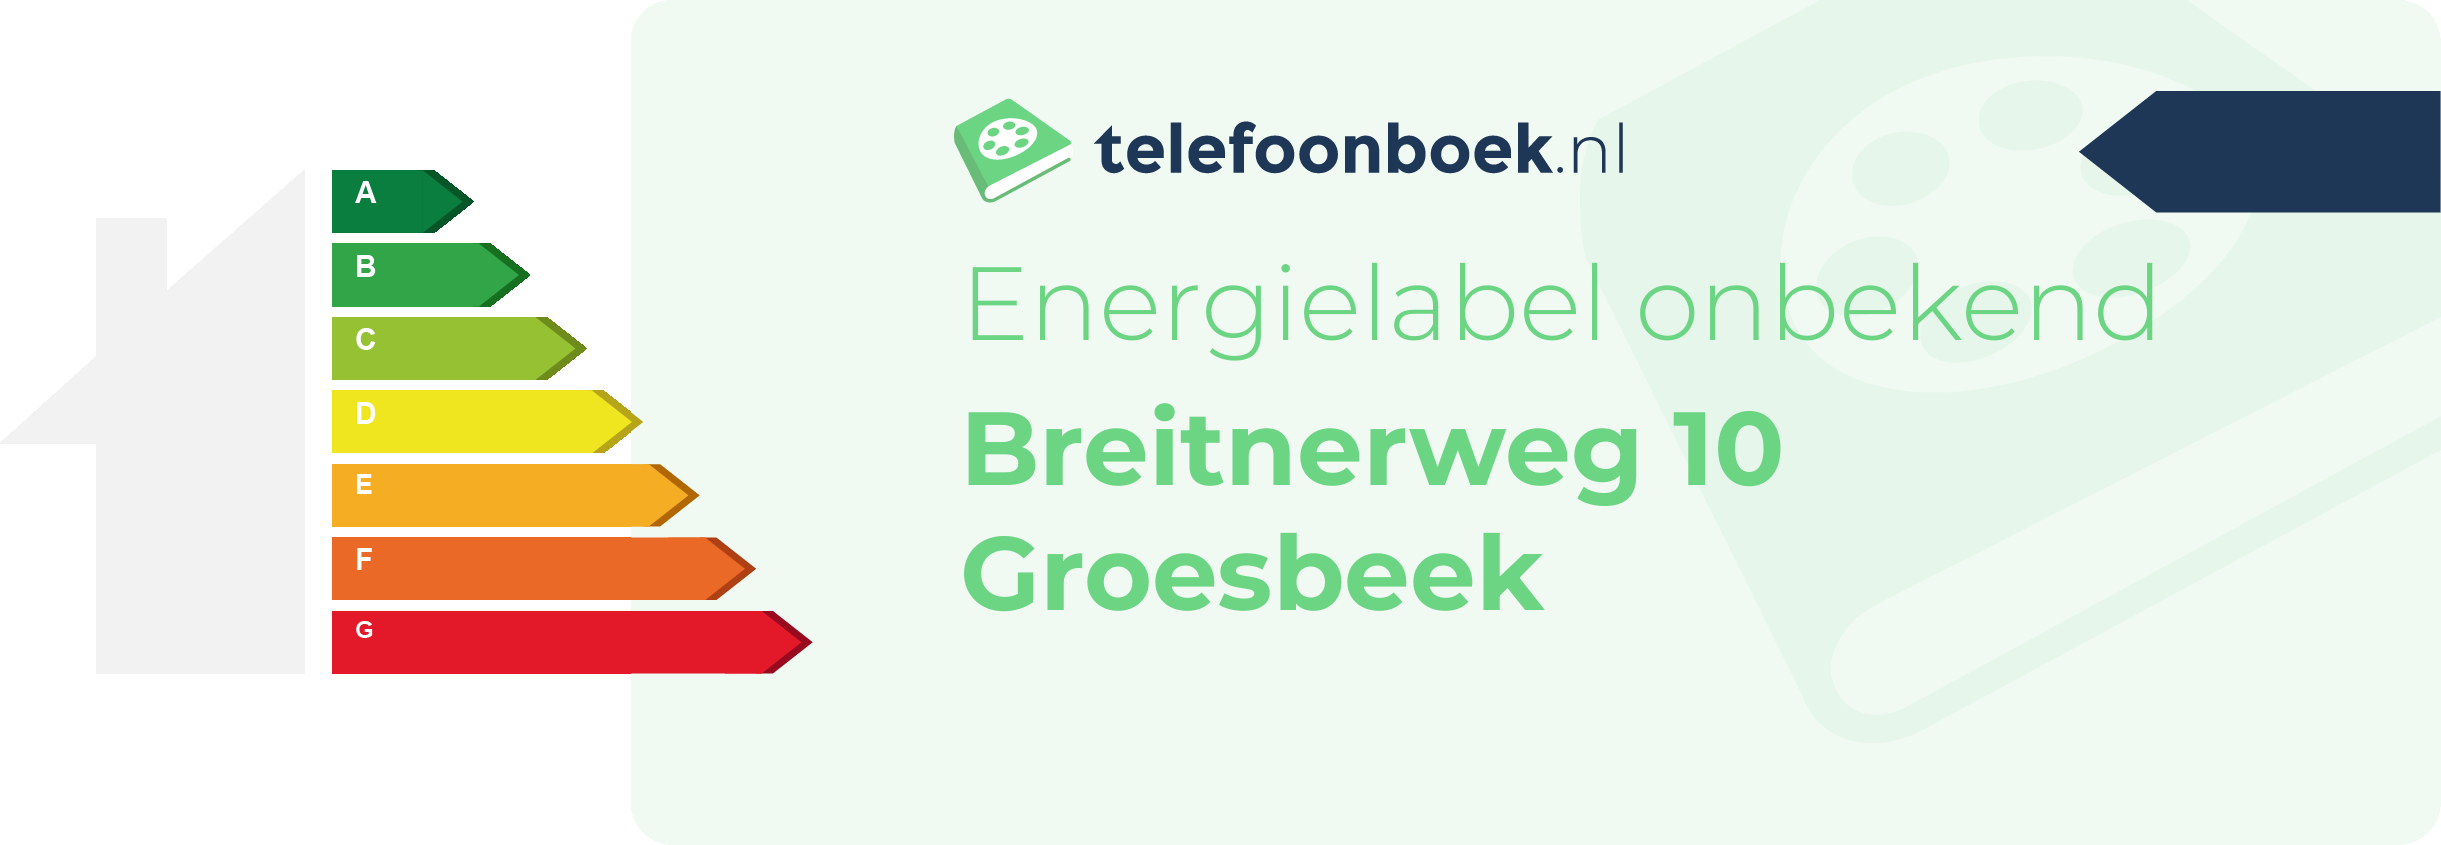 Energielabel Breitnerweg 10 Groesbeek